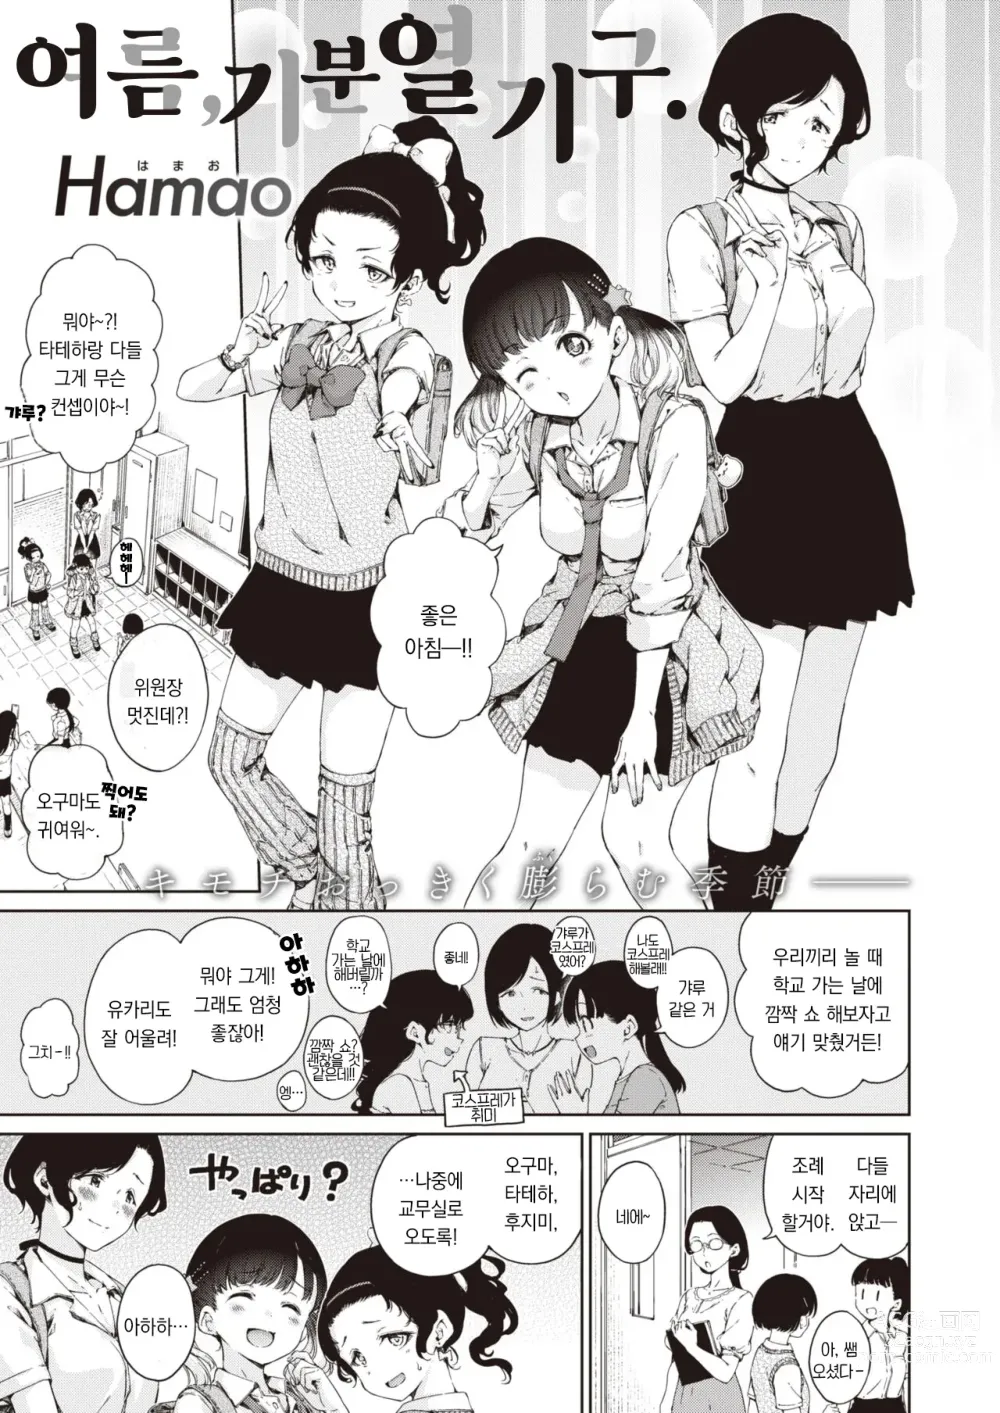 Page 2 of manga 여름, 기분 열기구.